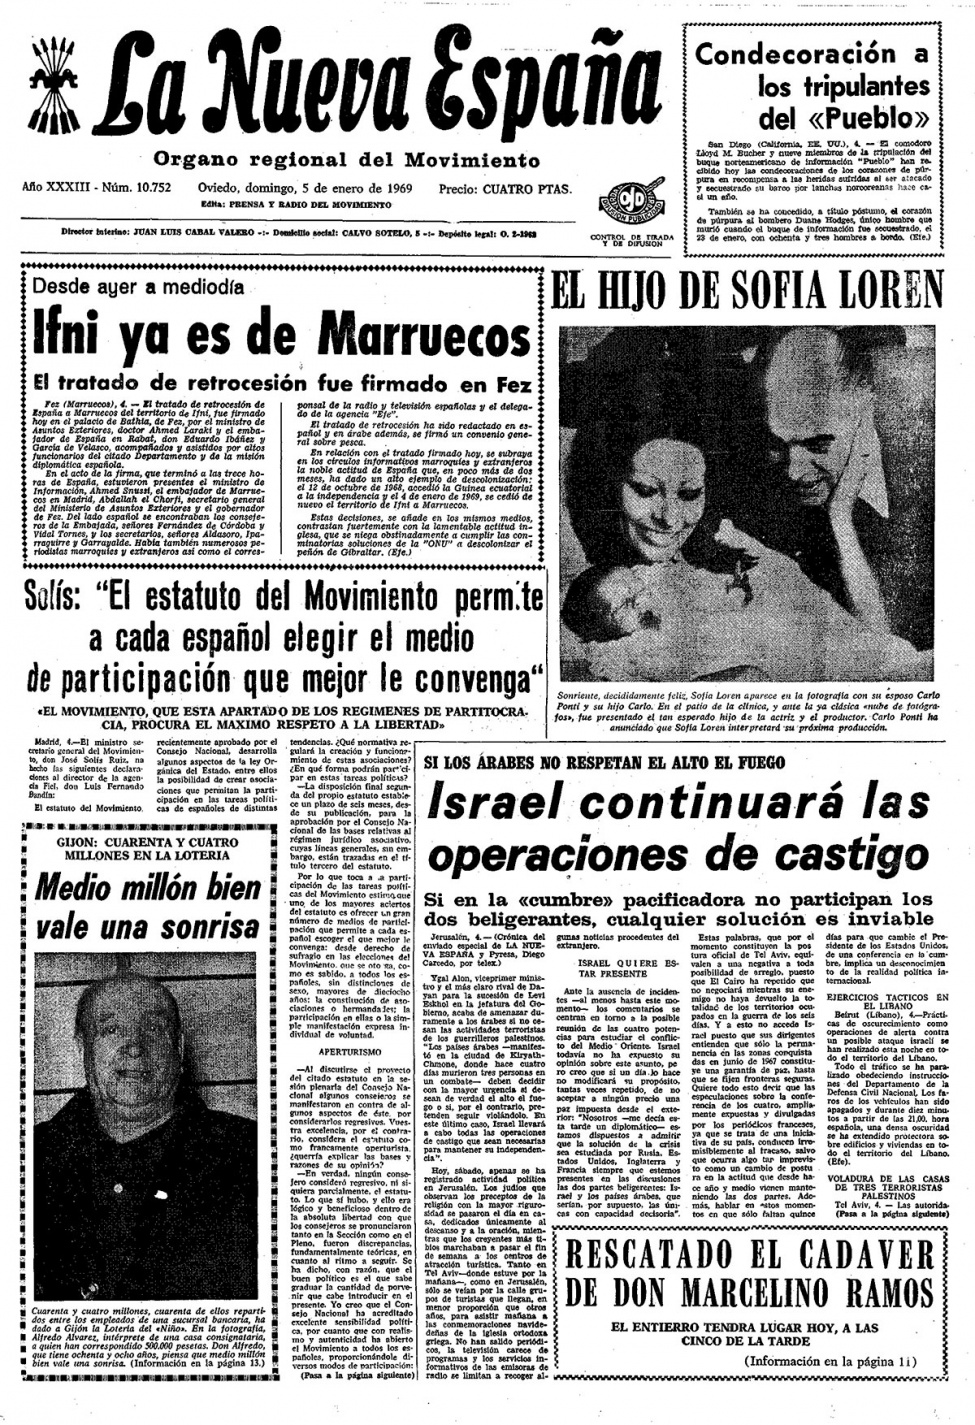 Portada del Domingo, 5 de Enero de 1969